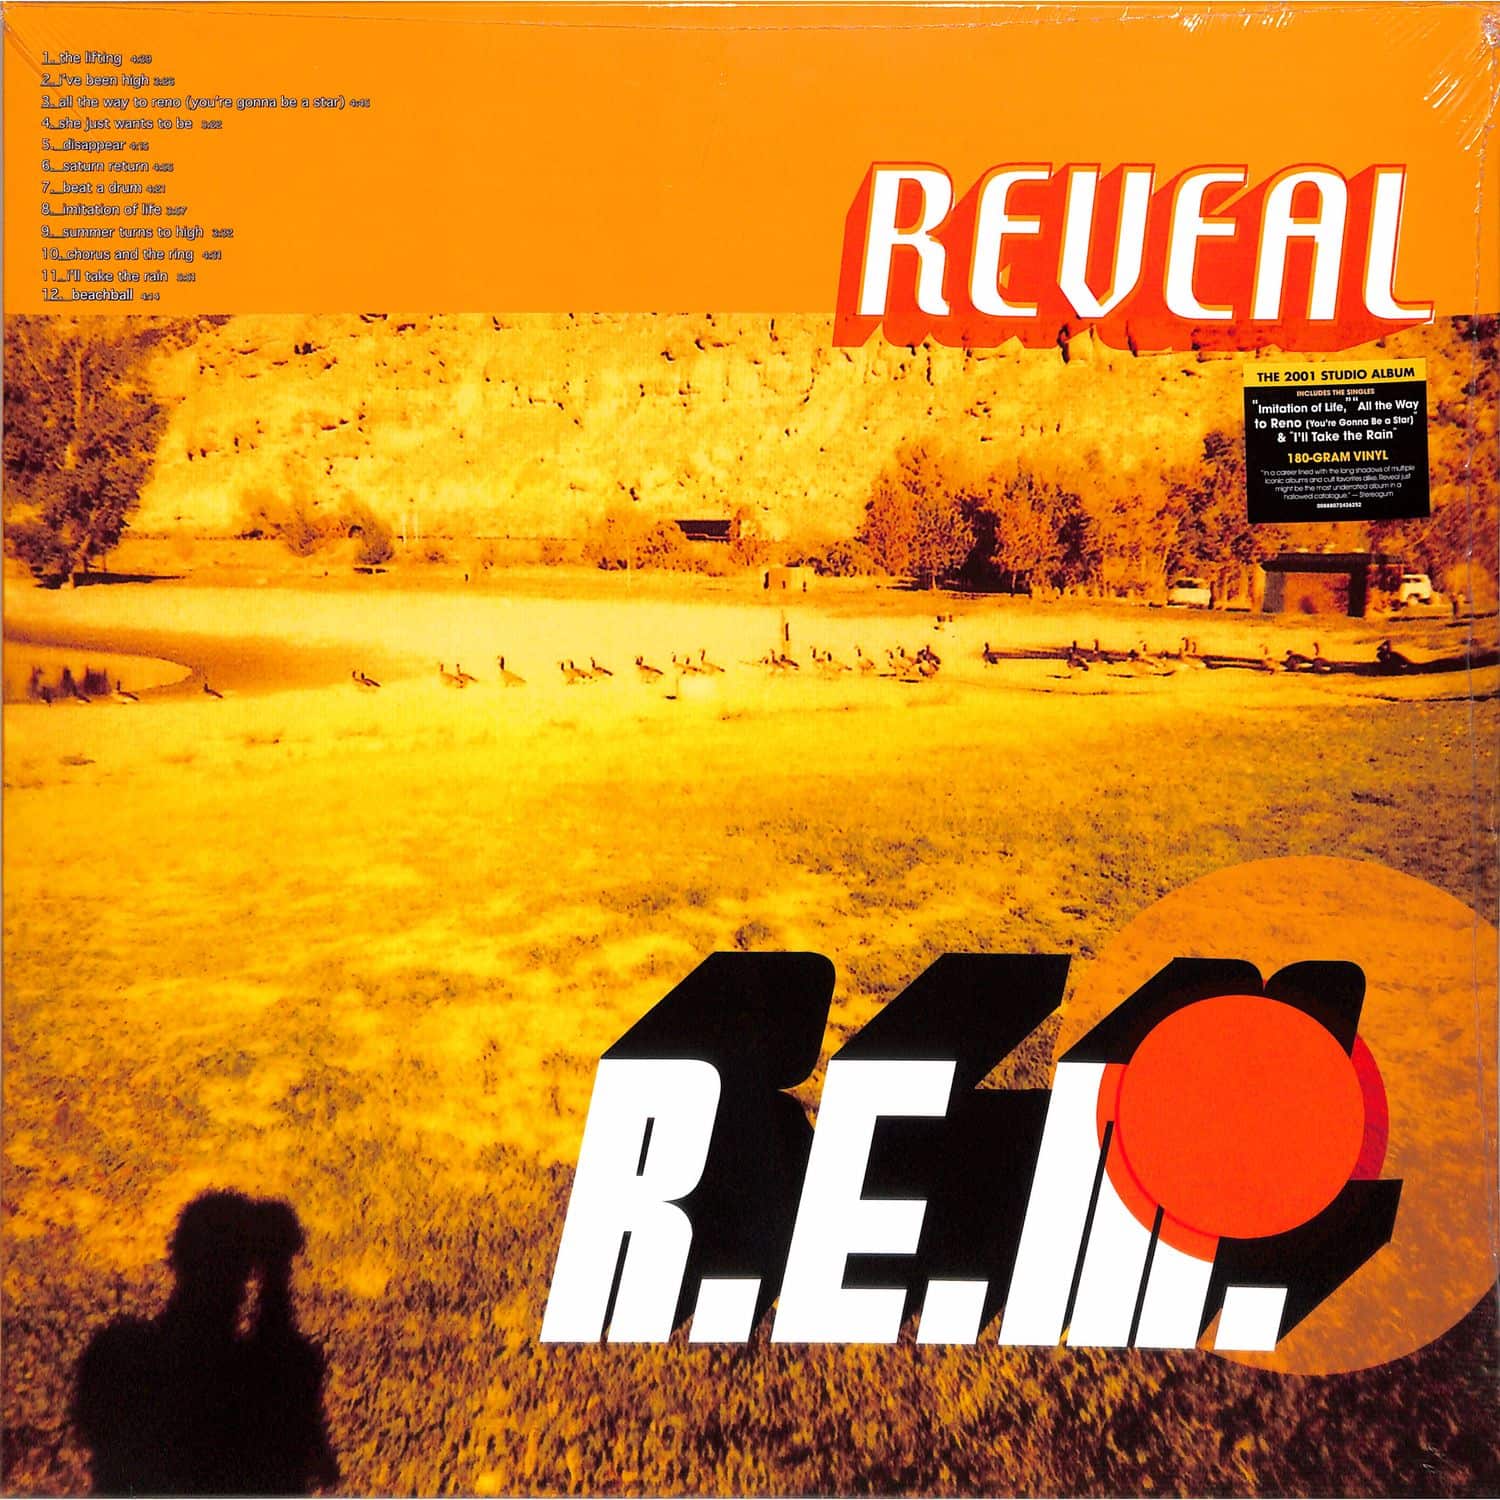 R.E.M. - REVEAL 